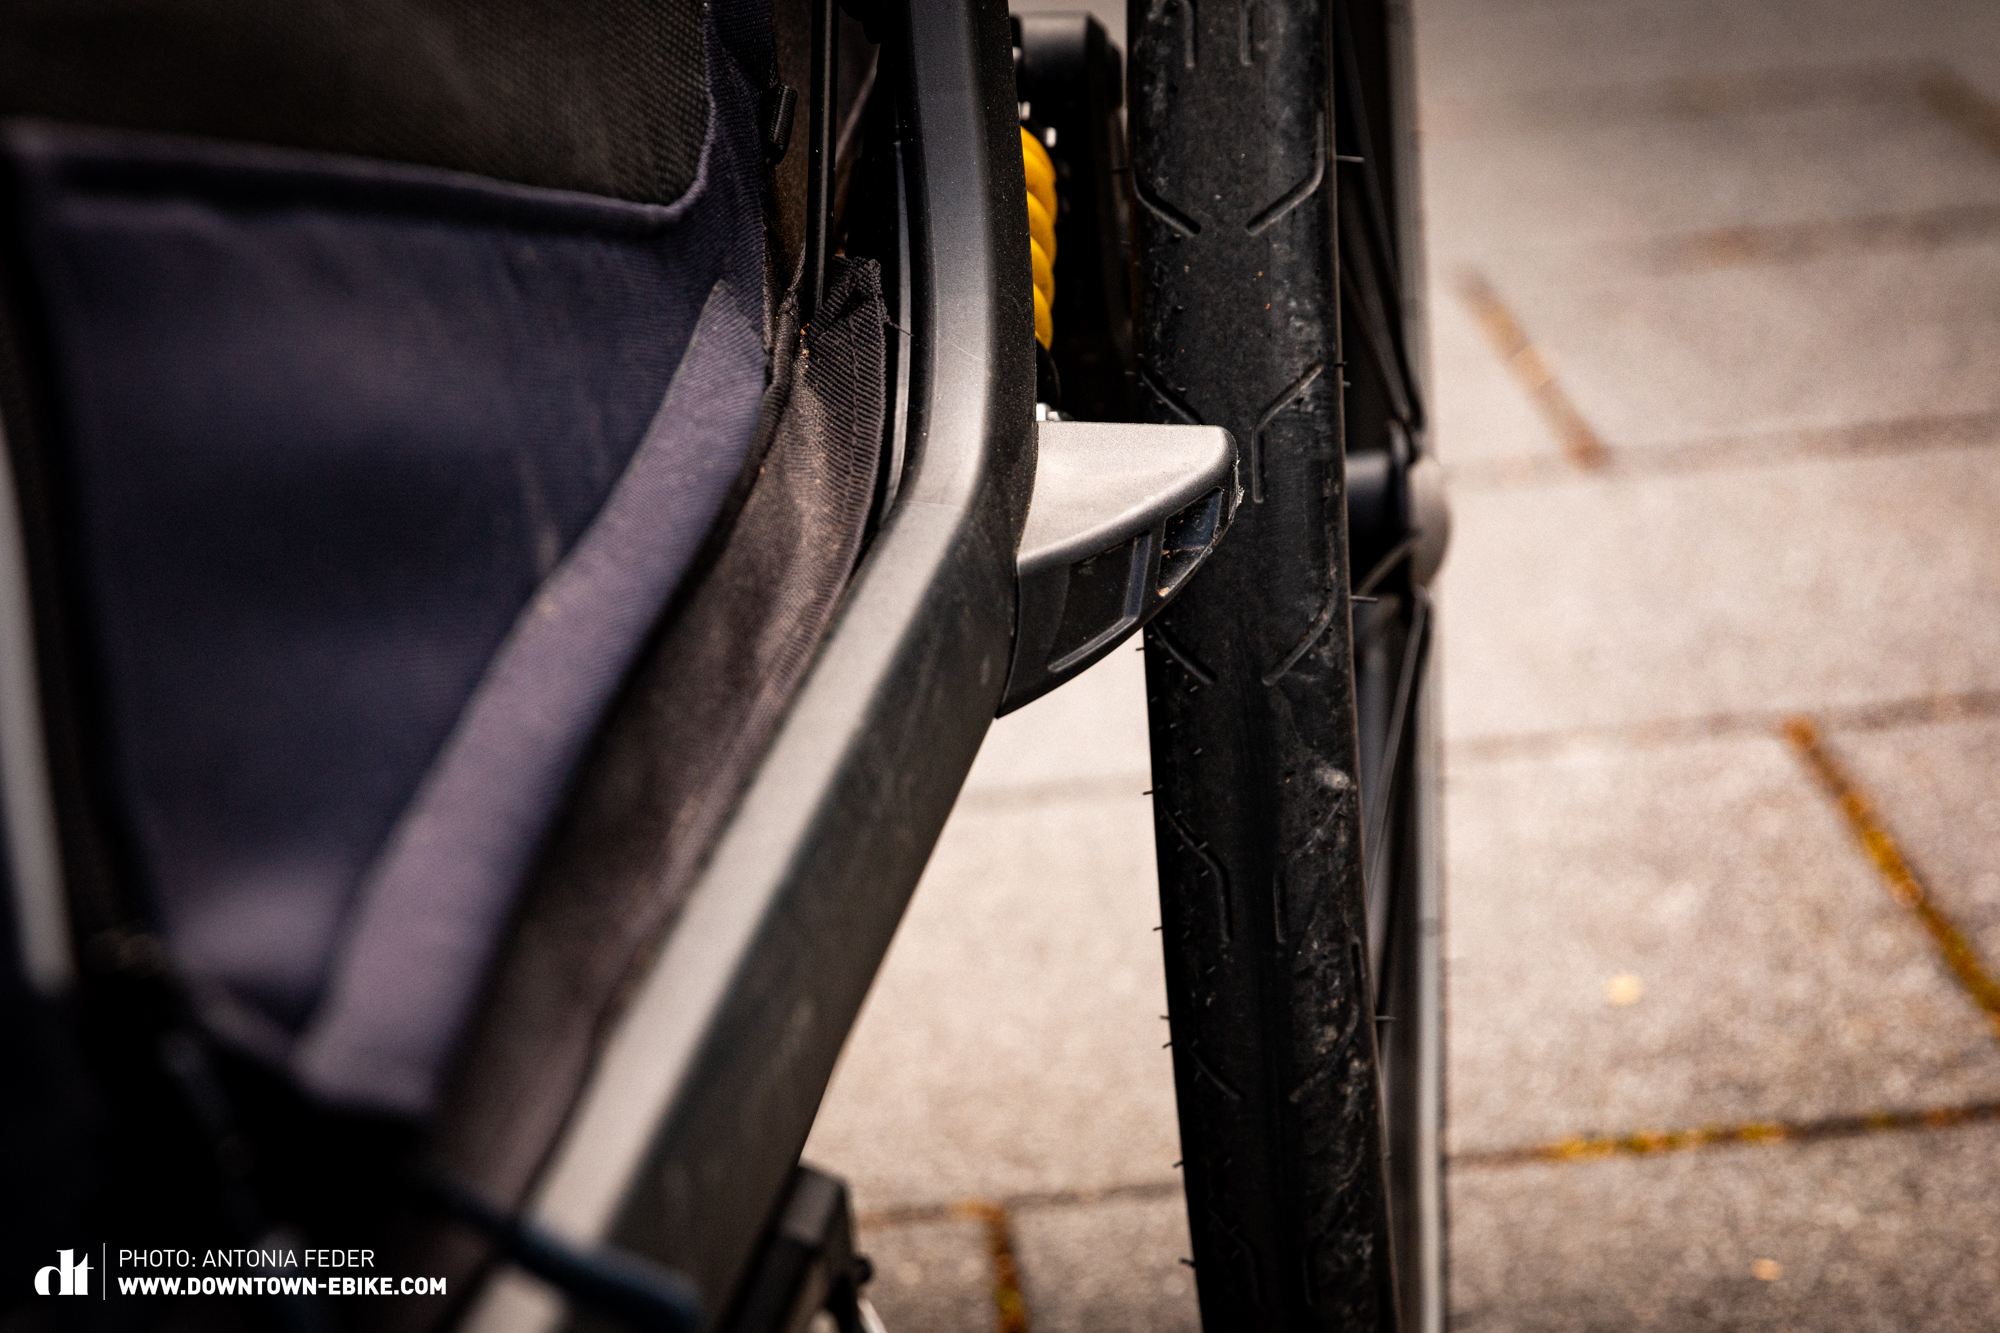 Hier sieht man, dass der Stoßfänger dieses Fahrrad-Hundeanhänger zu klein ist und das Rad nicht ausreichend schützt. 